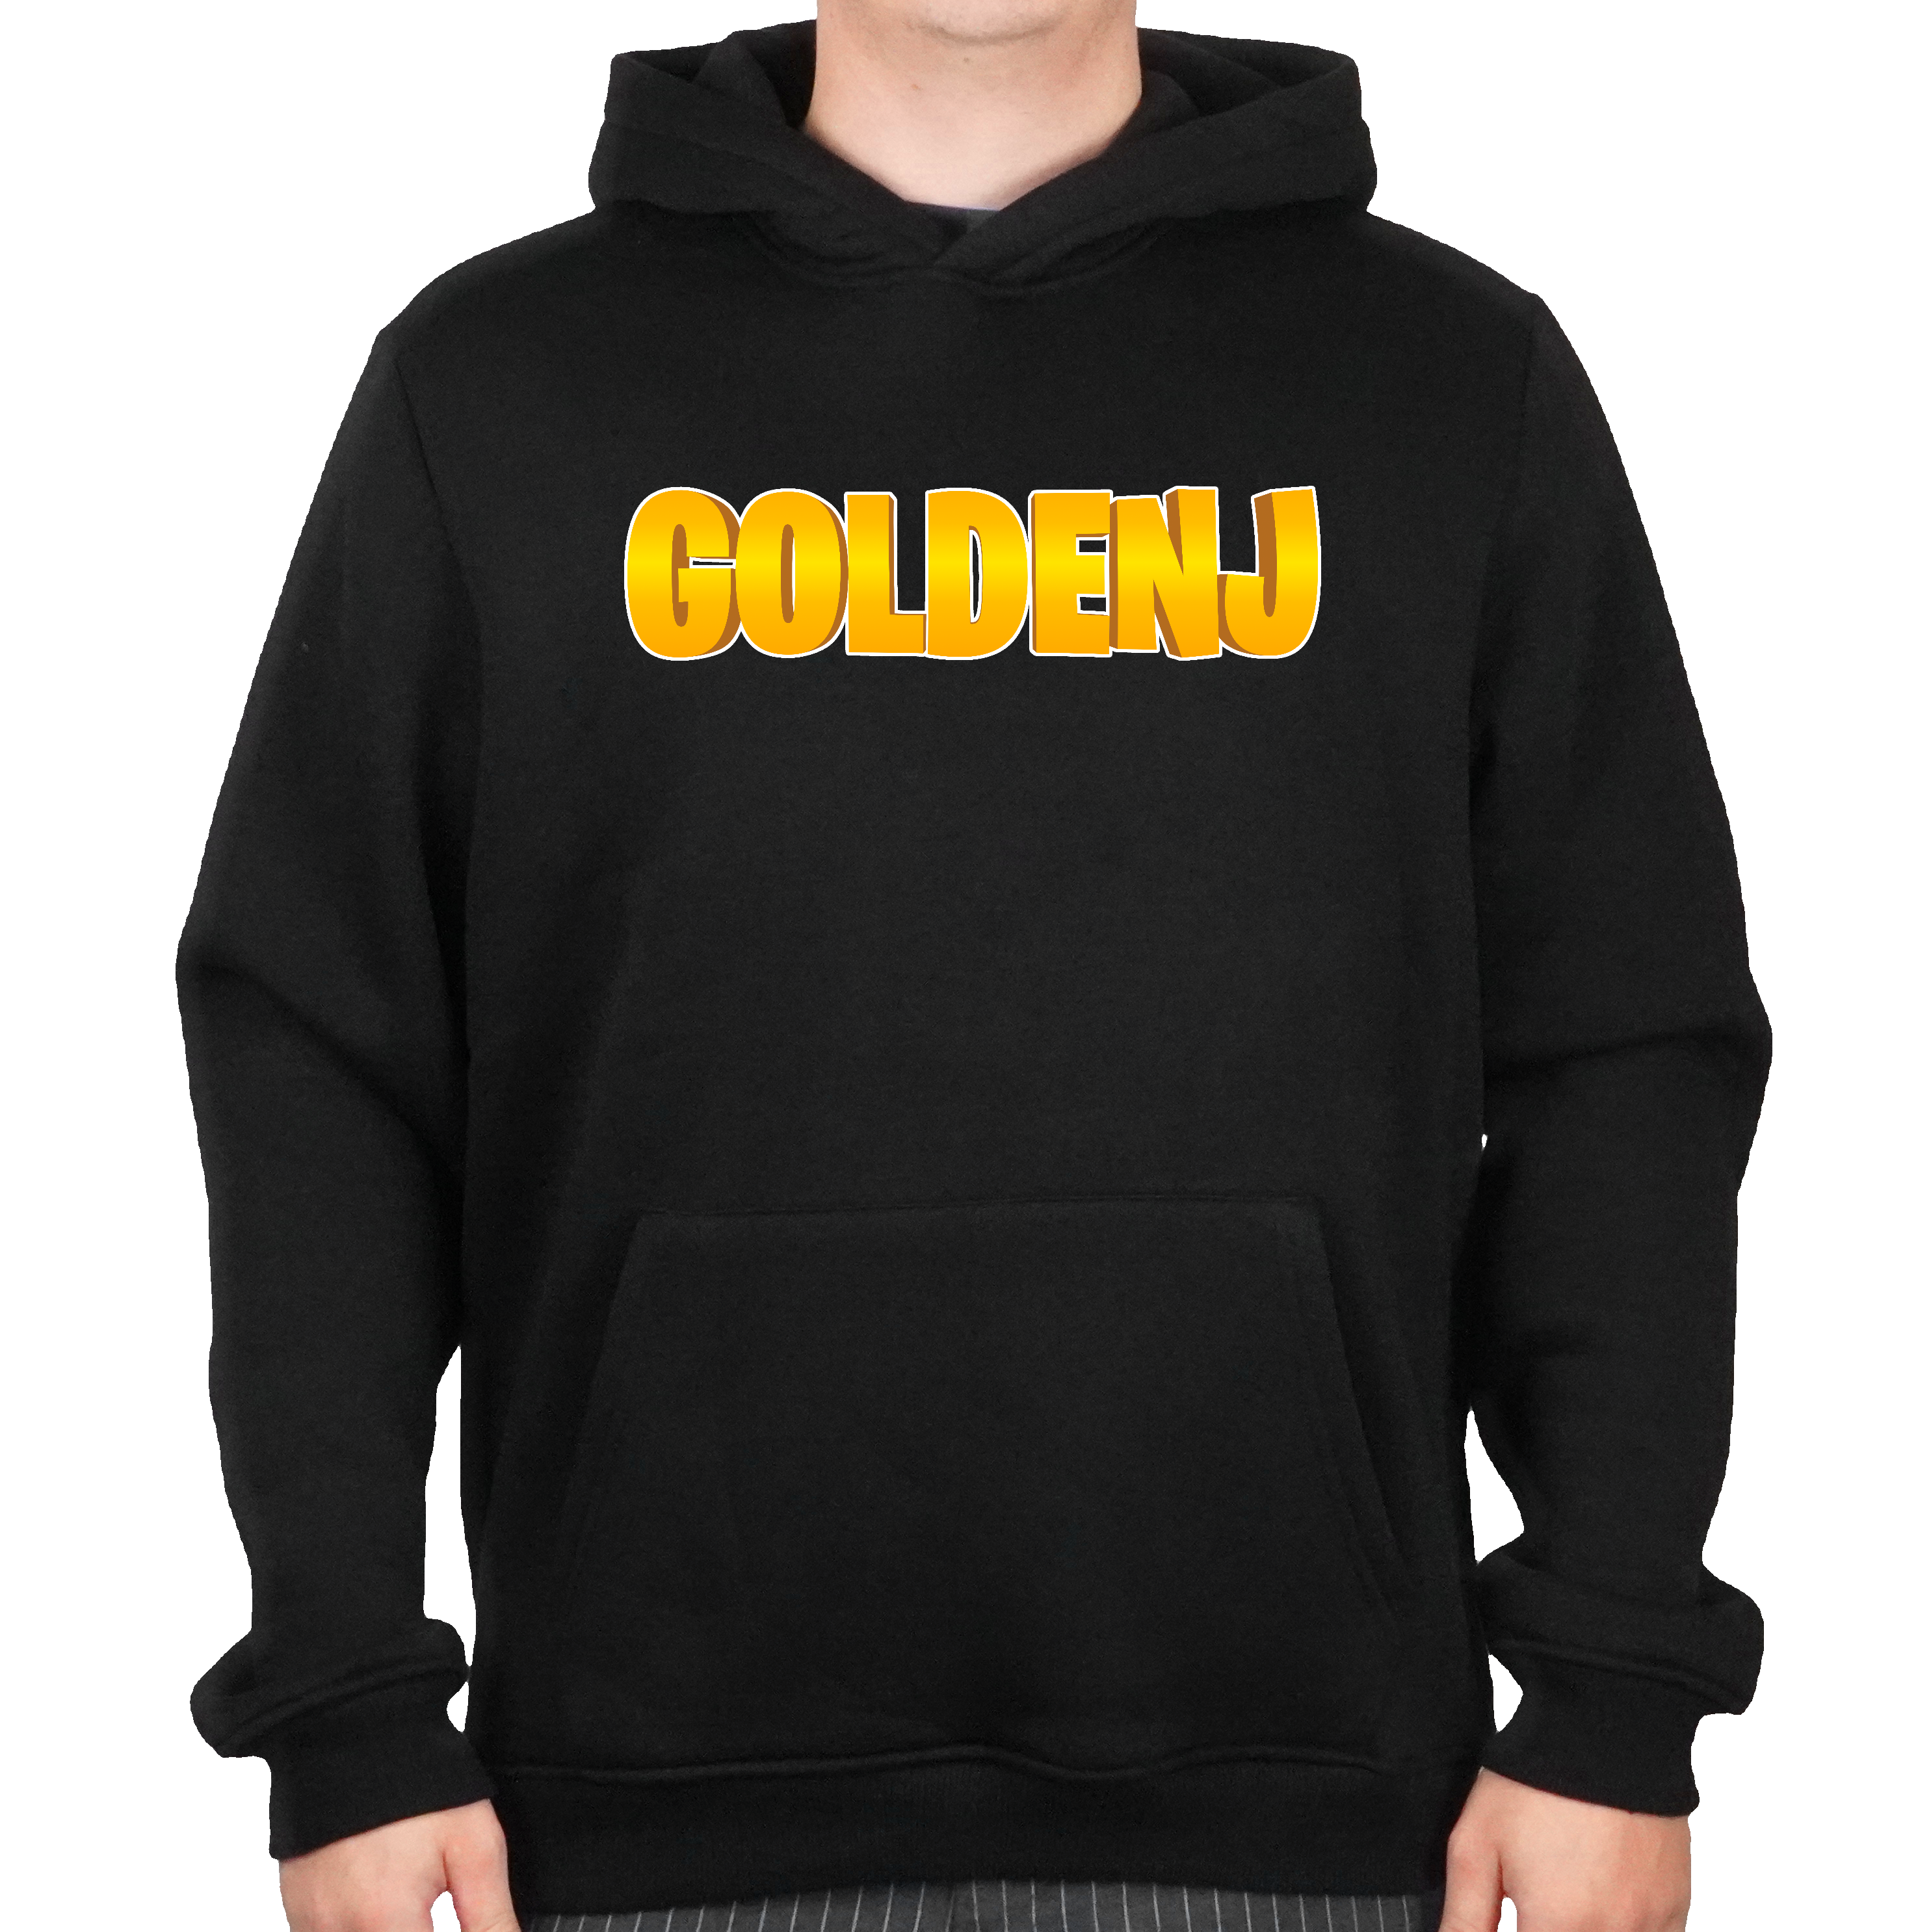 goldenj hoodie merchandise hos geekd